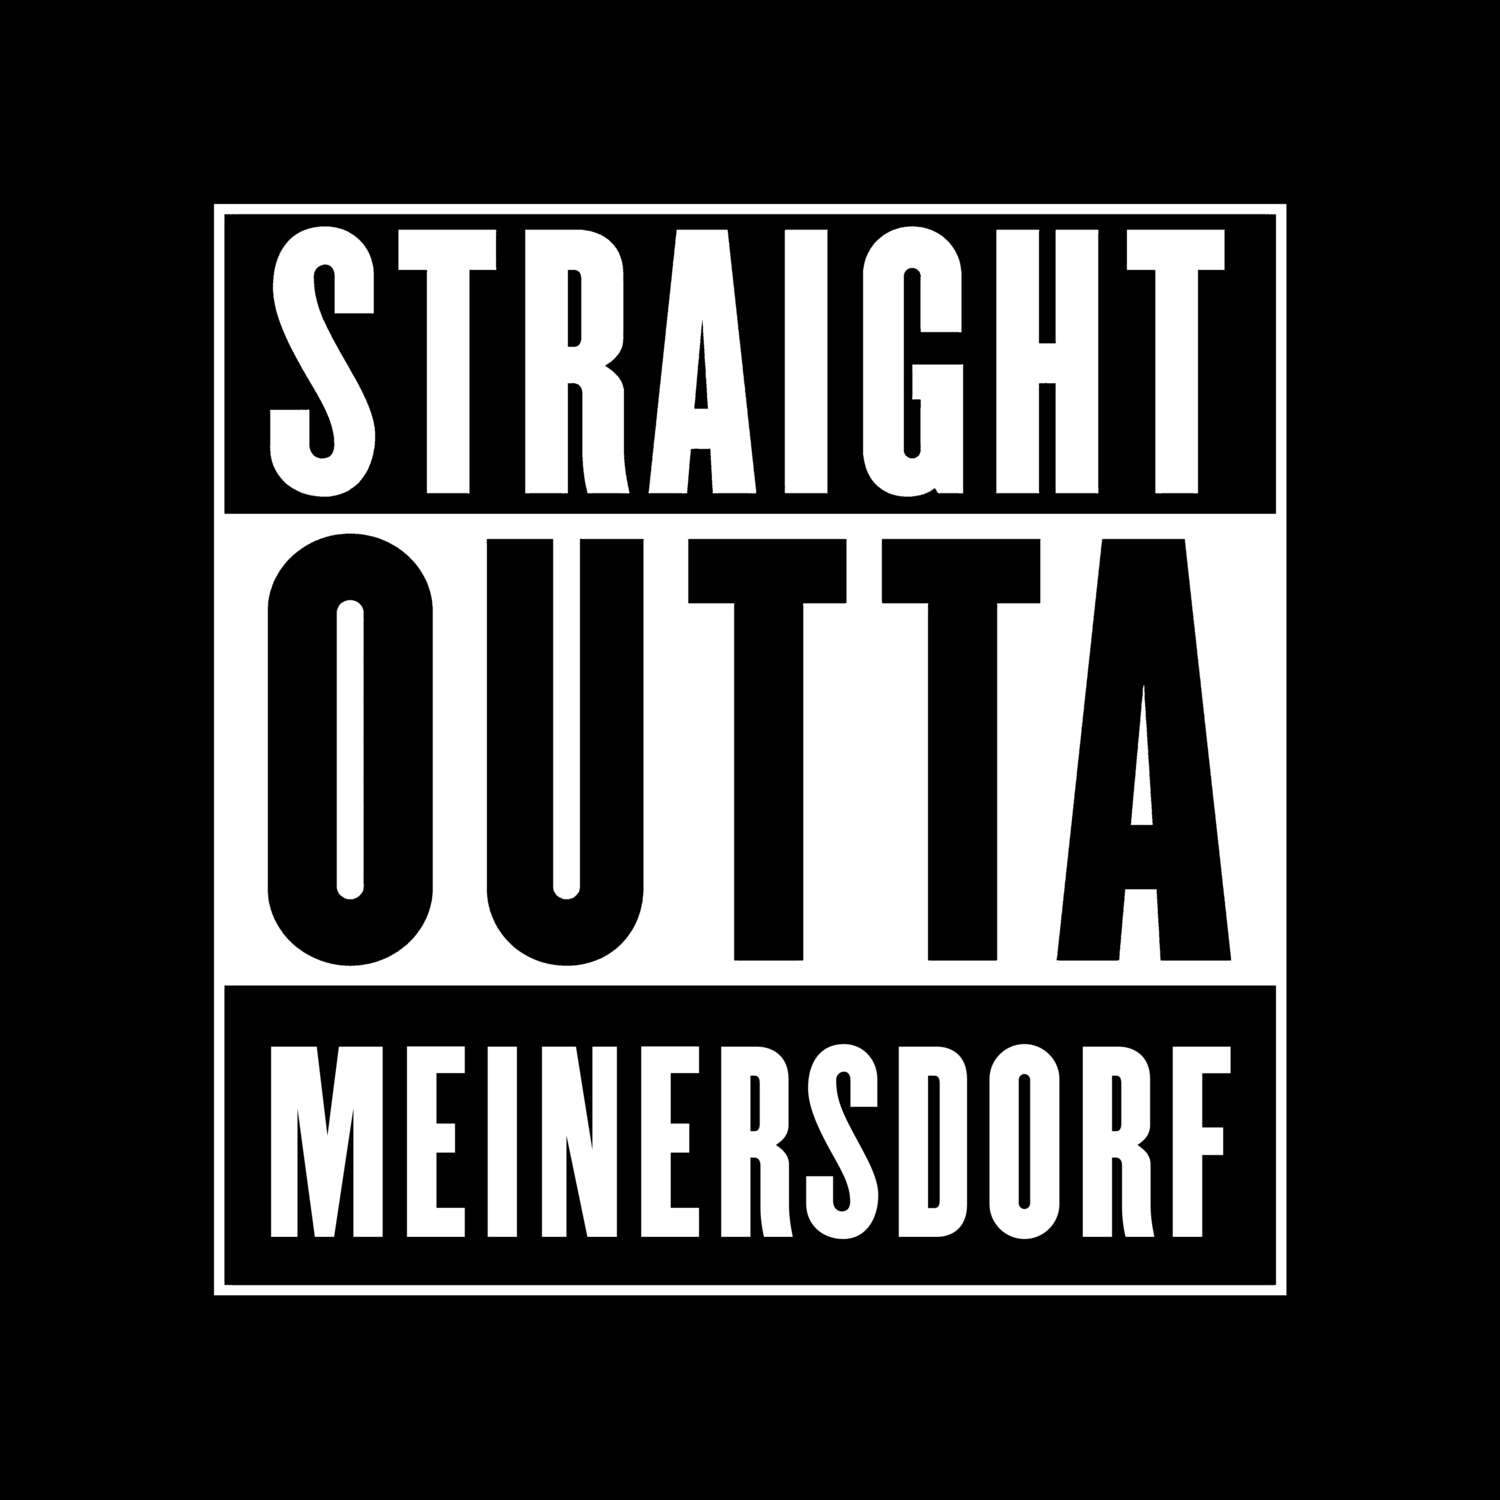 Meinersdorf T-Shirt »Straight Outta«